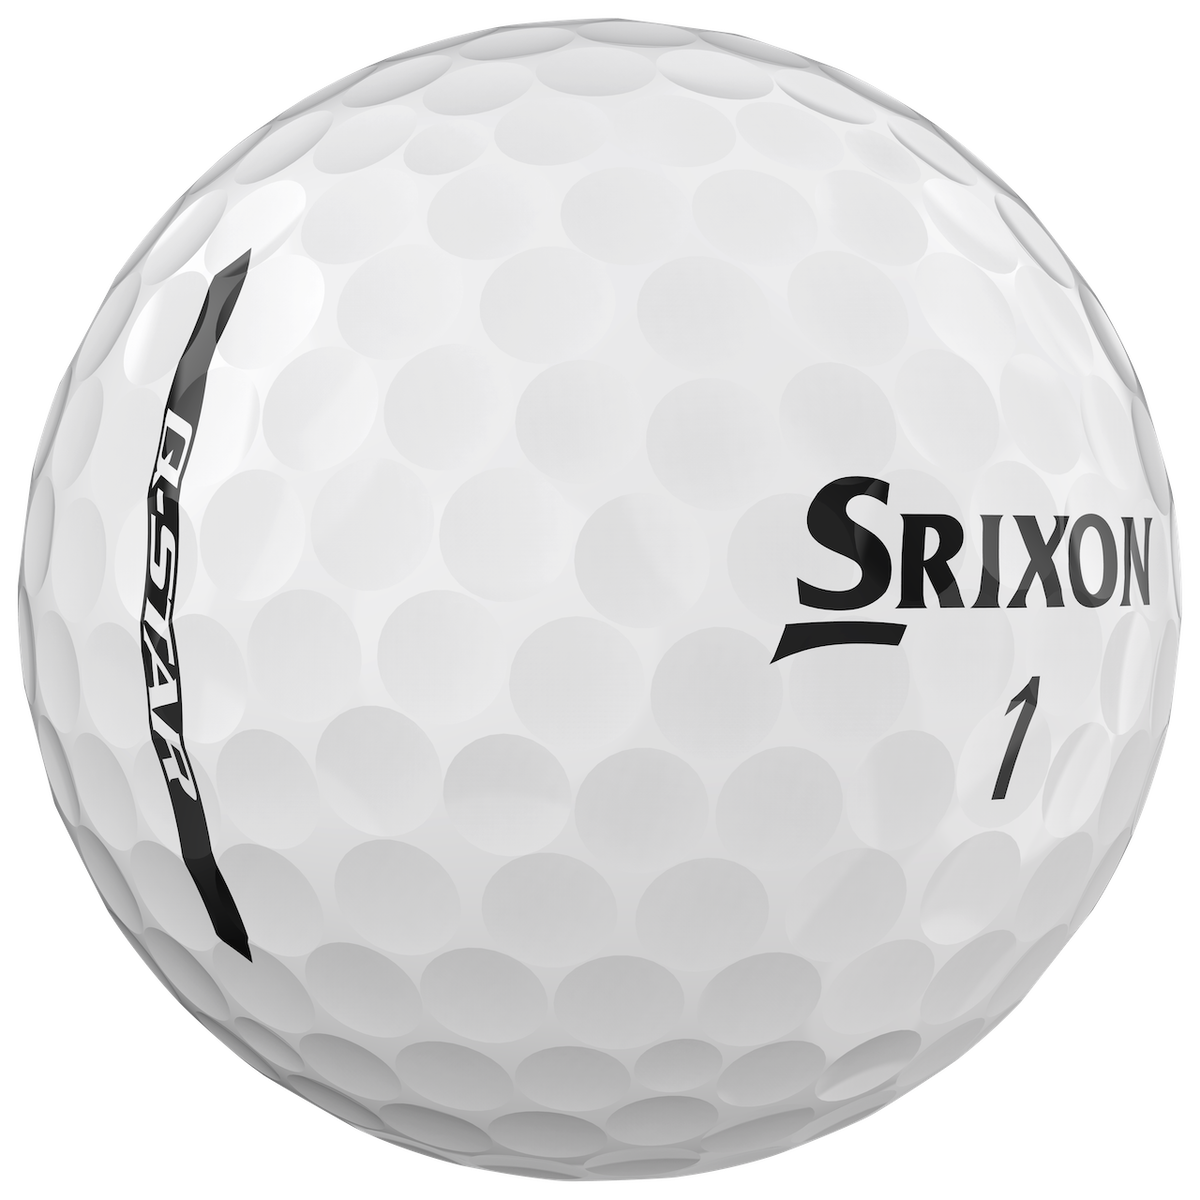 Srixon Q Star golf ball